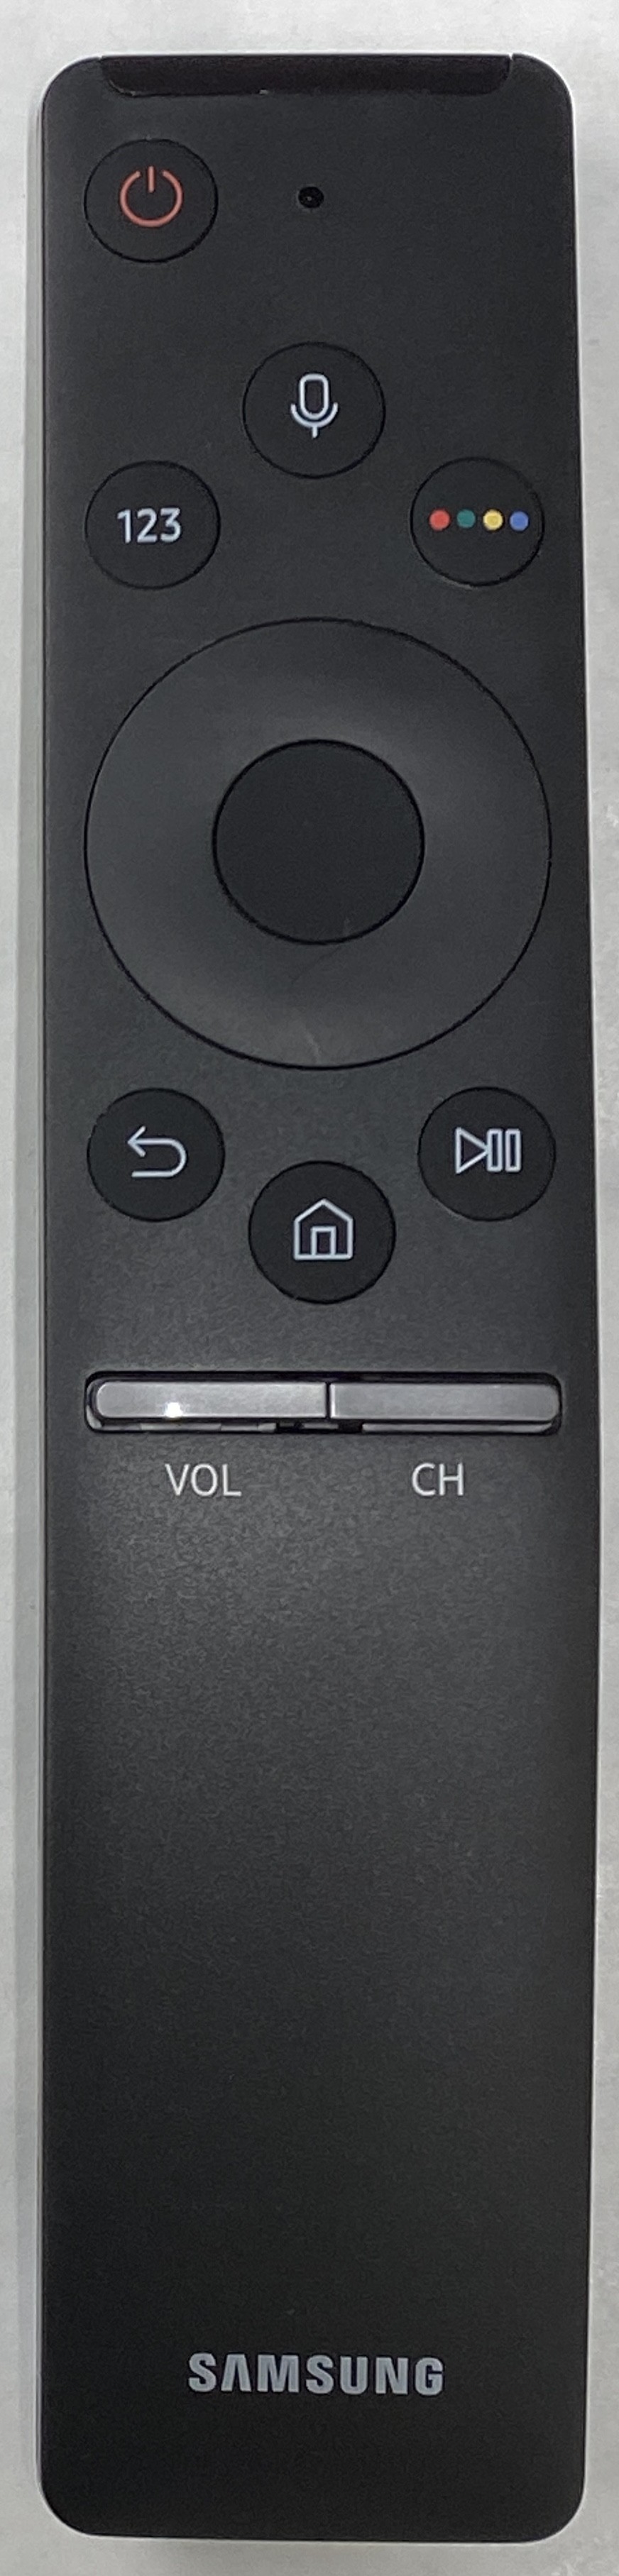 SAMSUNG BN59-01242A Smart Remote Control Original 